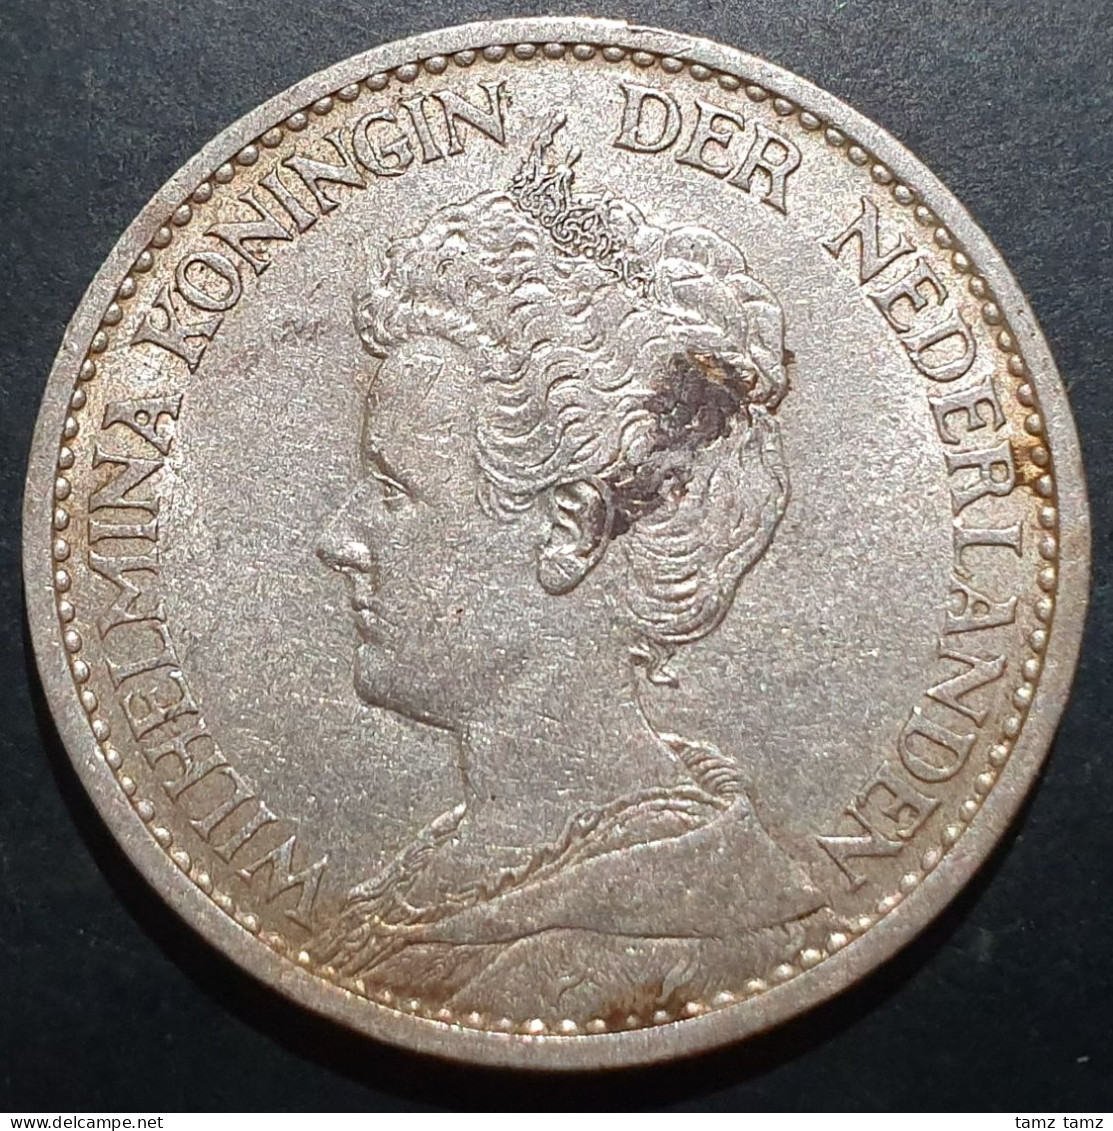 Netherlands 1 Gulden Wilhelmina Crown 1917 Silver XF - 1 Gulden